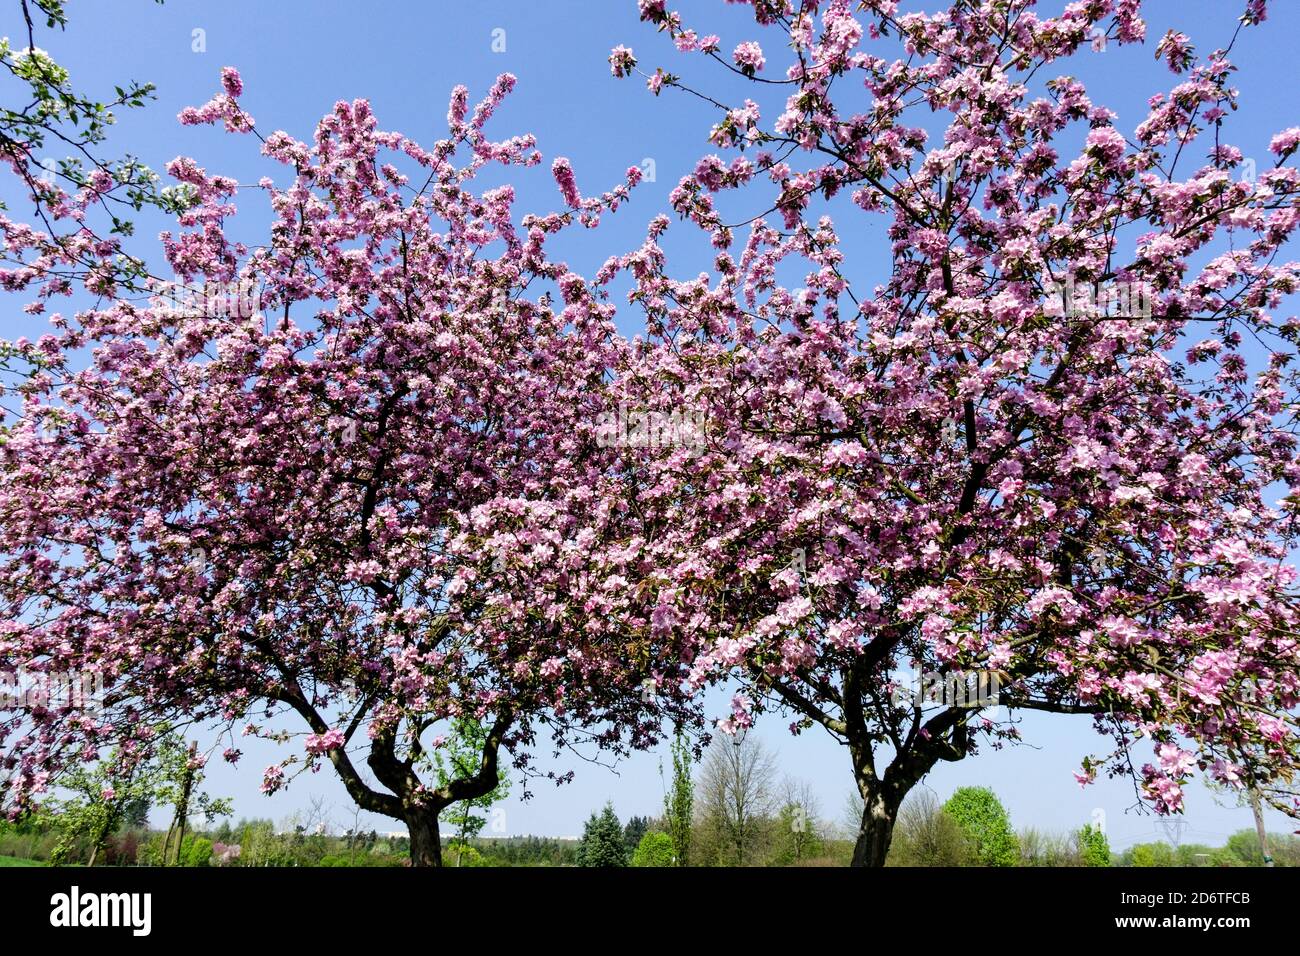 Spring apple trees flowering tree against blue skies Stock Photo